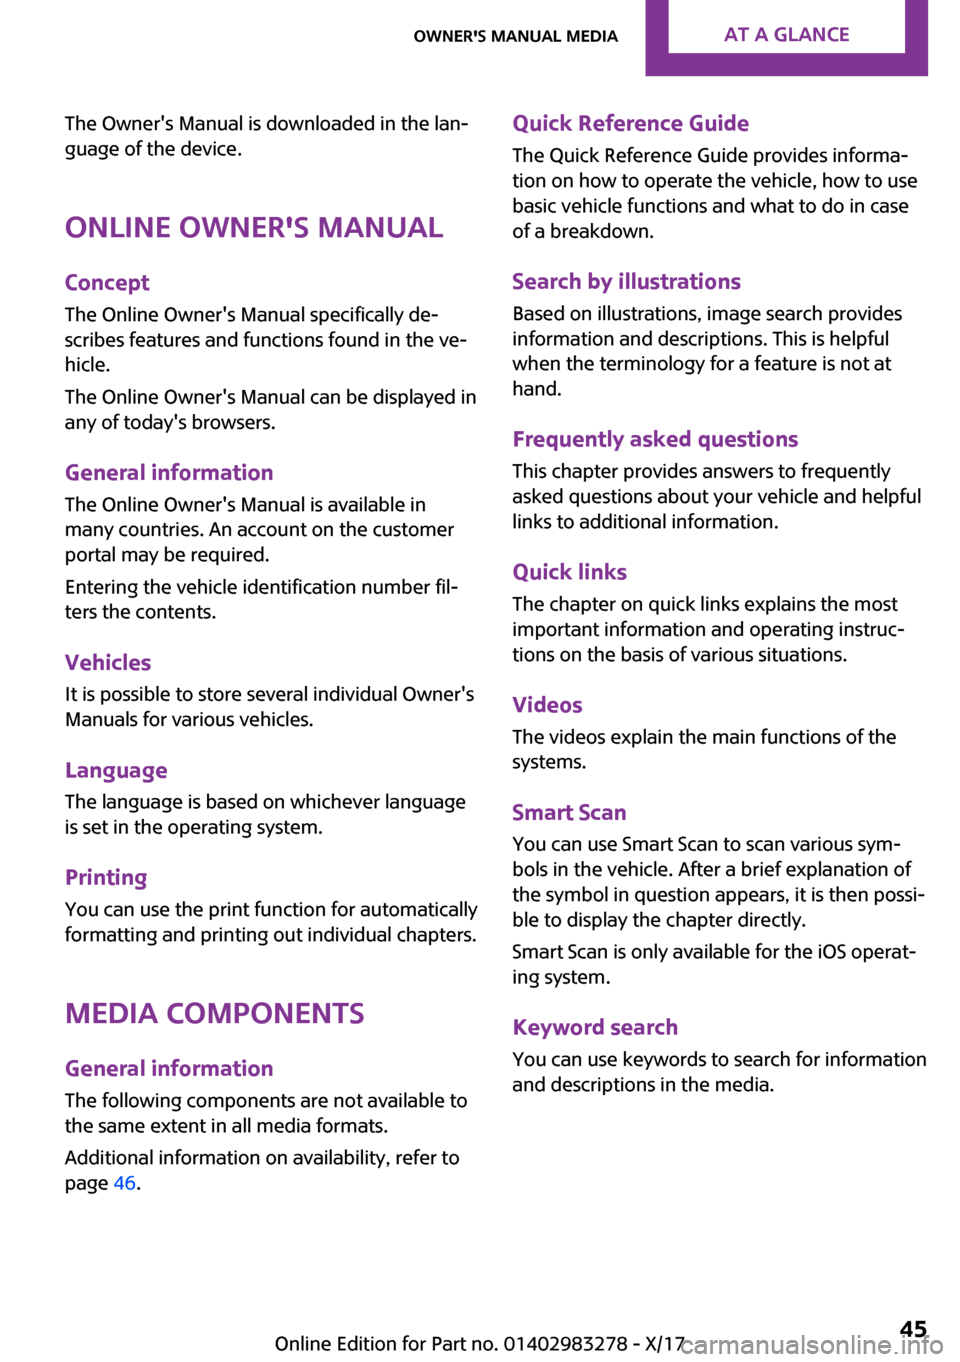 MINI Clubman 2018 Service Manual �T�h�e� �O�w�n�e�r��s� �M�a�n�u�a�l� �i�s� �d�o�w�n�l�o�a�d�e�d� �i�n� �t�h�e� �l�a�n~
�g�u�a�g�e� �o�f� �t�h�e� �d�e�v�i�c�e�.
�O�n�l�i�n�e��O�w�n�e�r��s��M�a�n�u�a�l �C�o�n�c�e�p�t�T�h�e� �O�n�